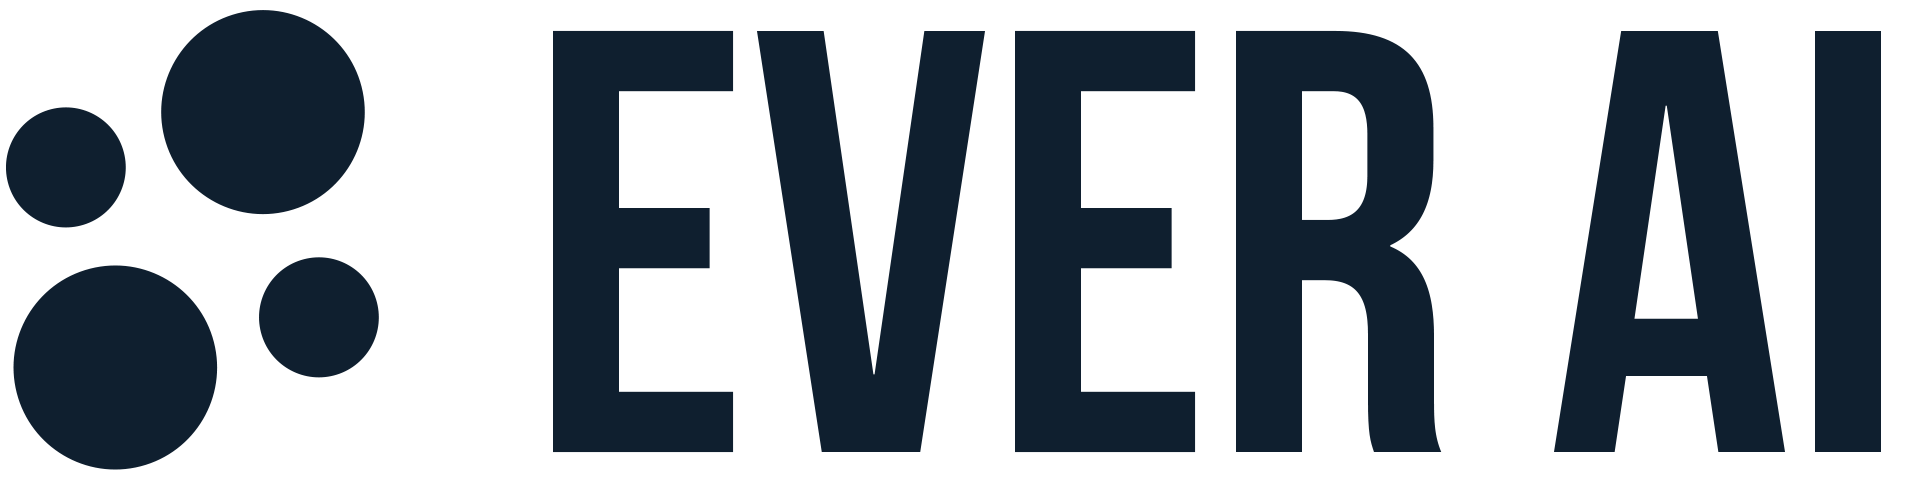 EverAI Logo.png